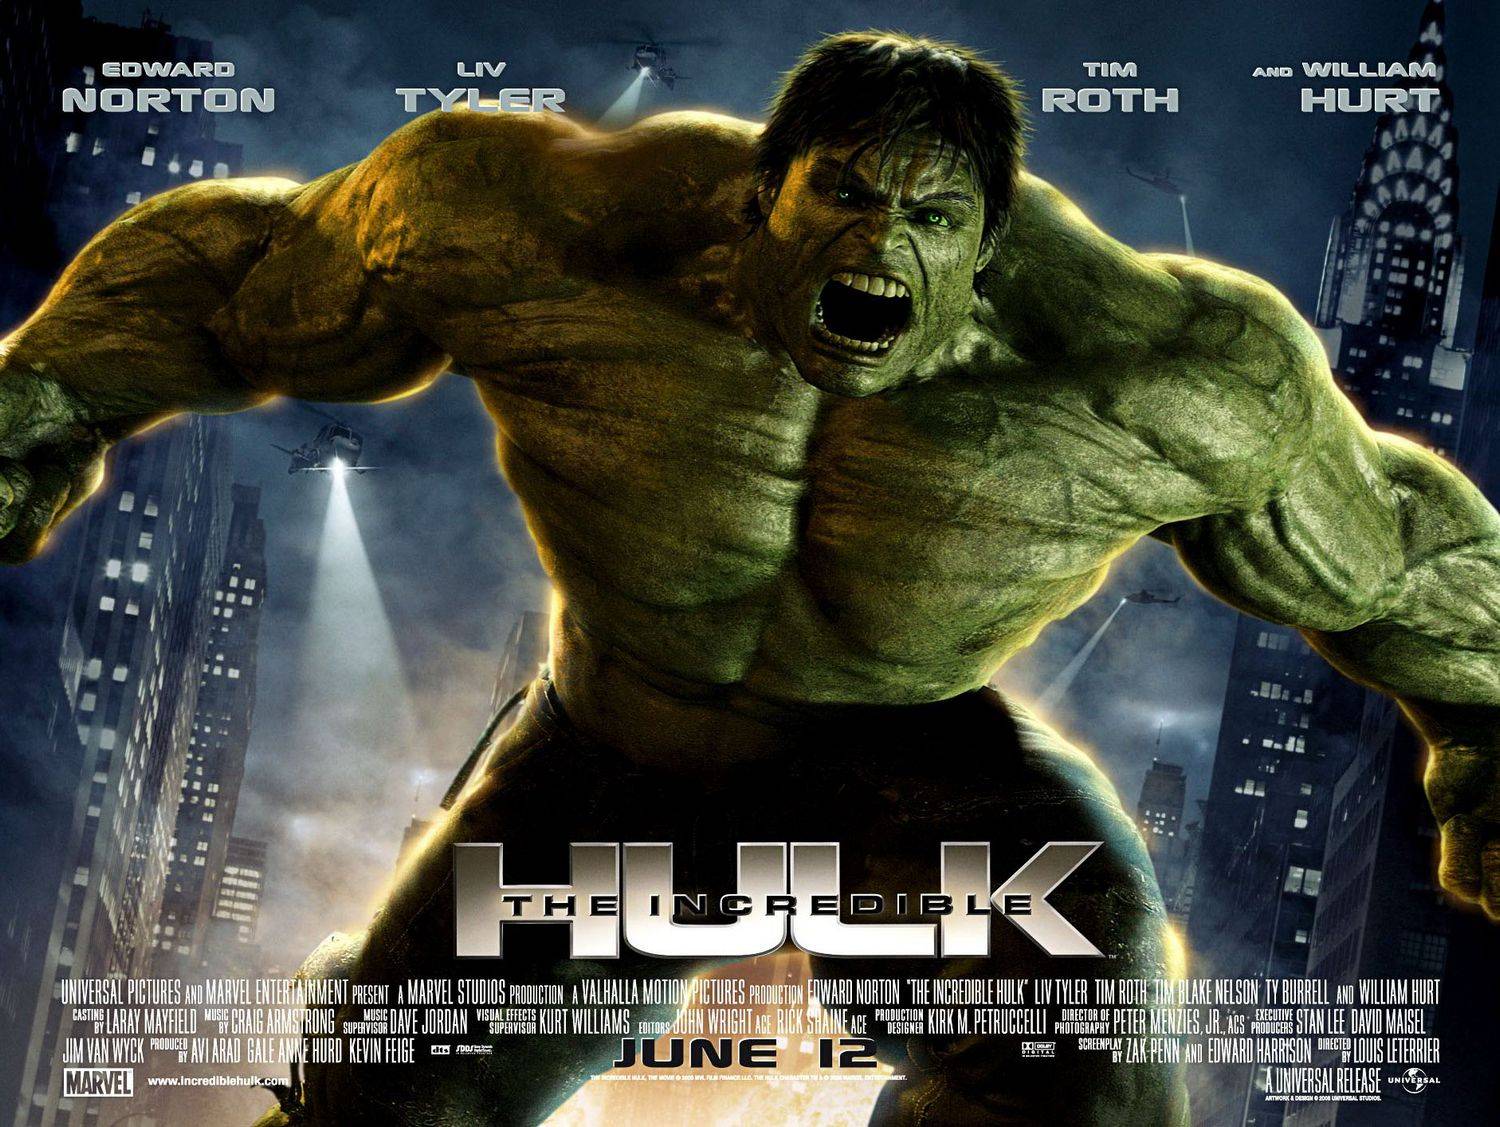 Wallpaper For > Incredible Hulk Wallpaper